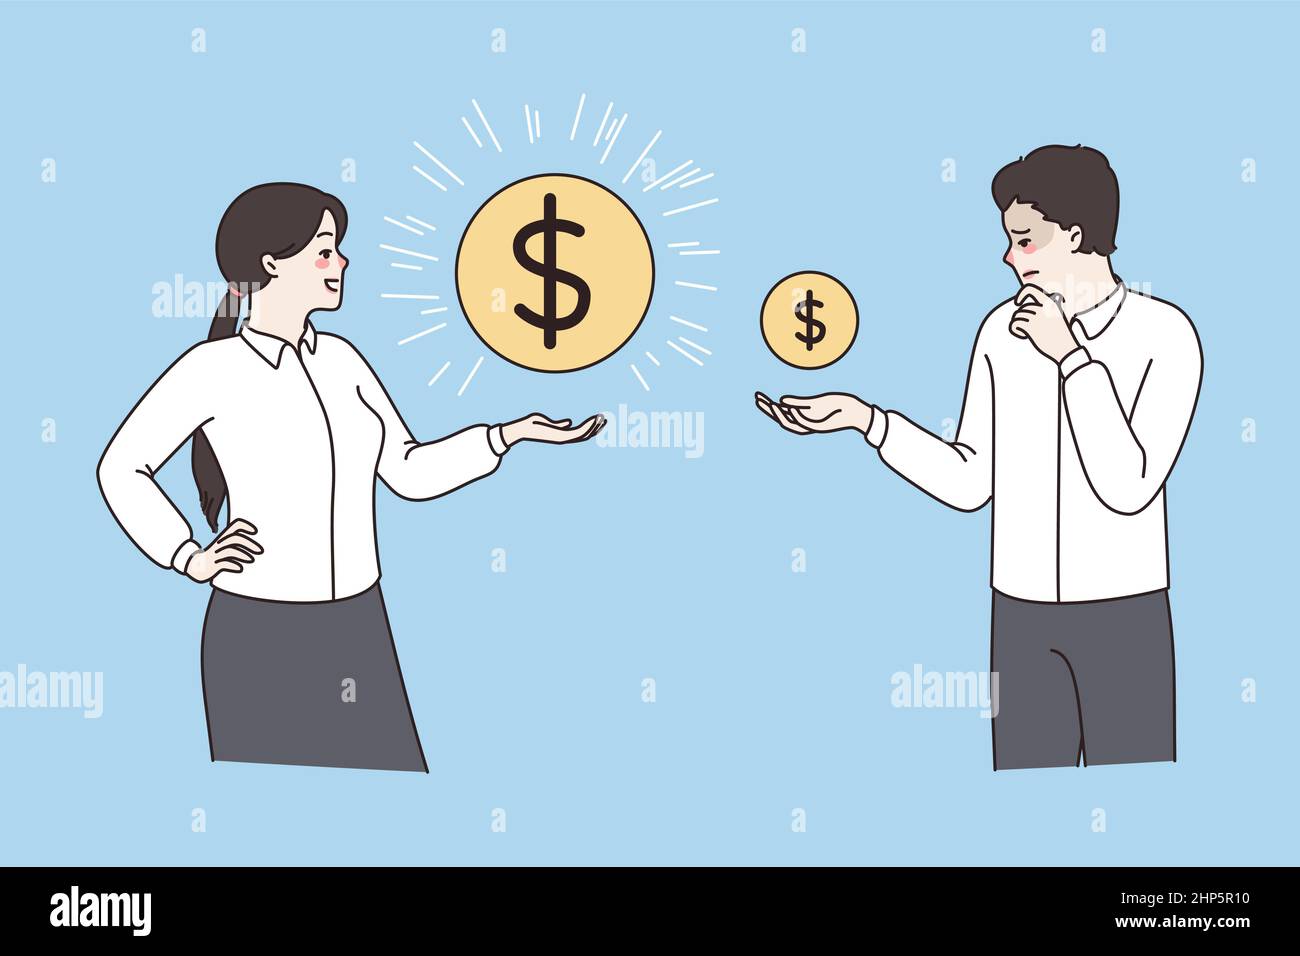 Los empleados con monedas muestran una variación salarial Ilustración del Vector